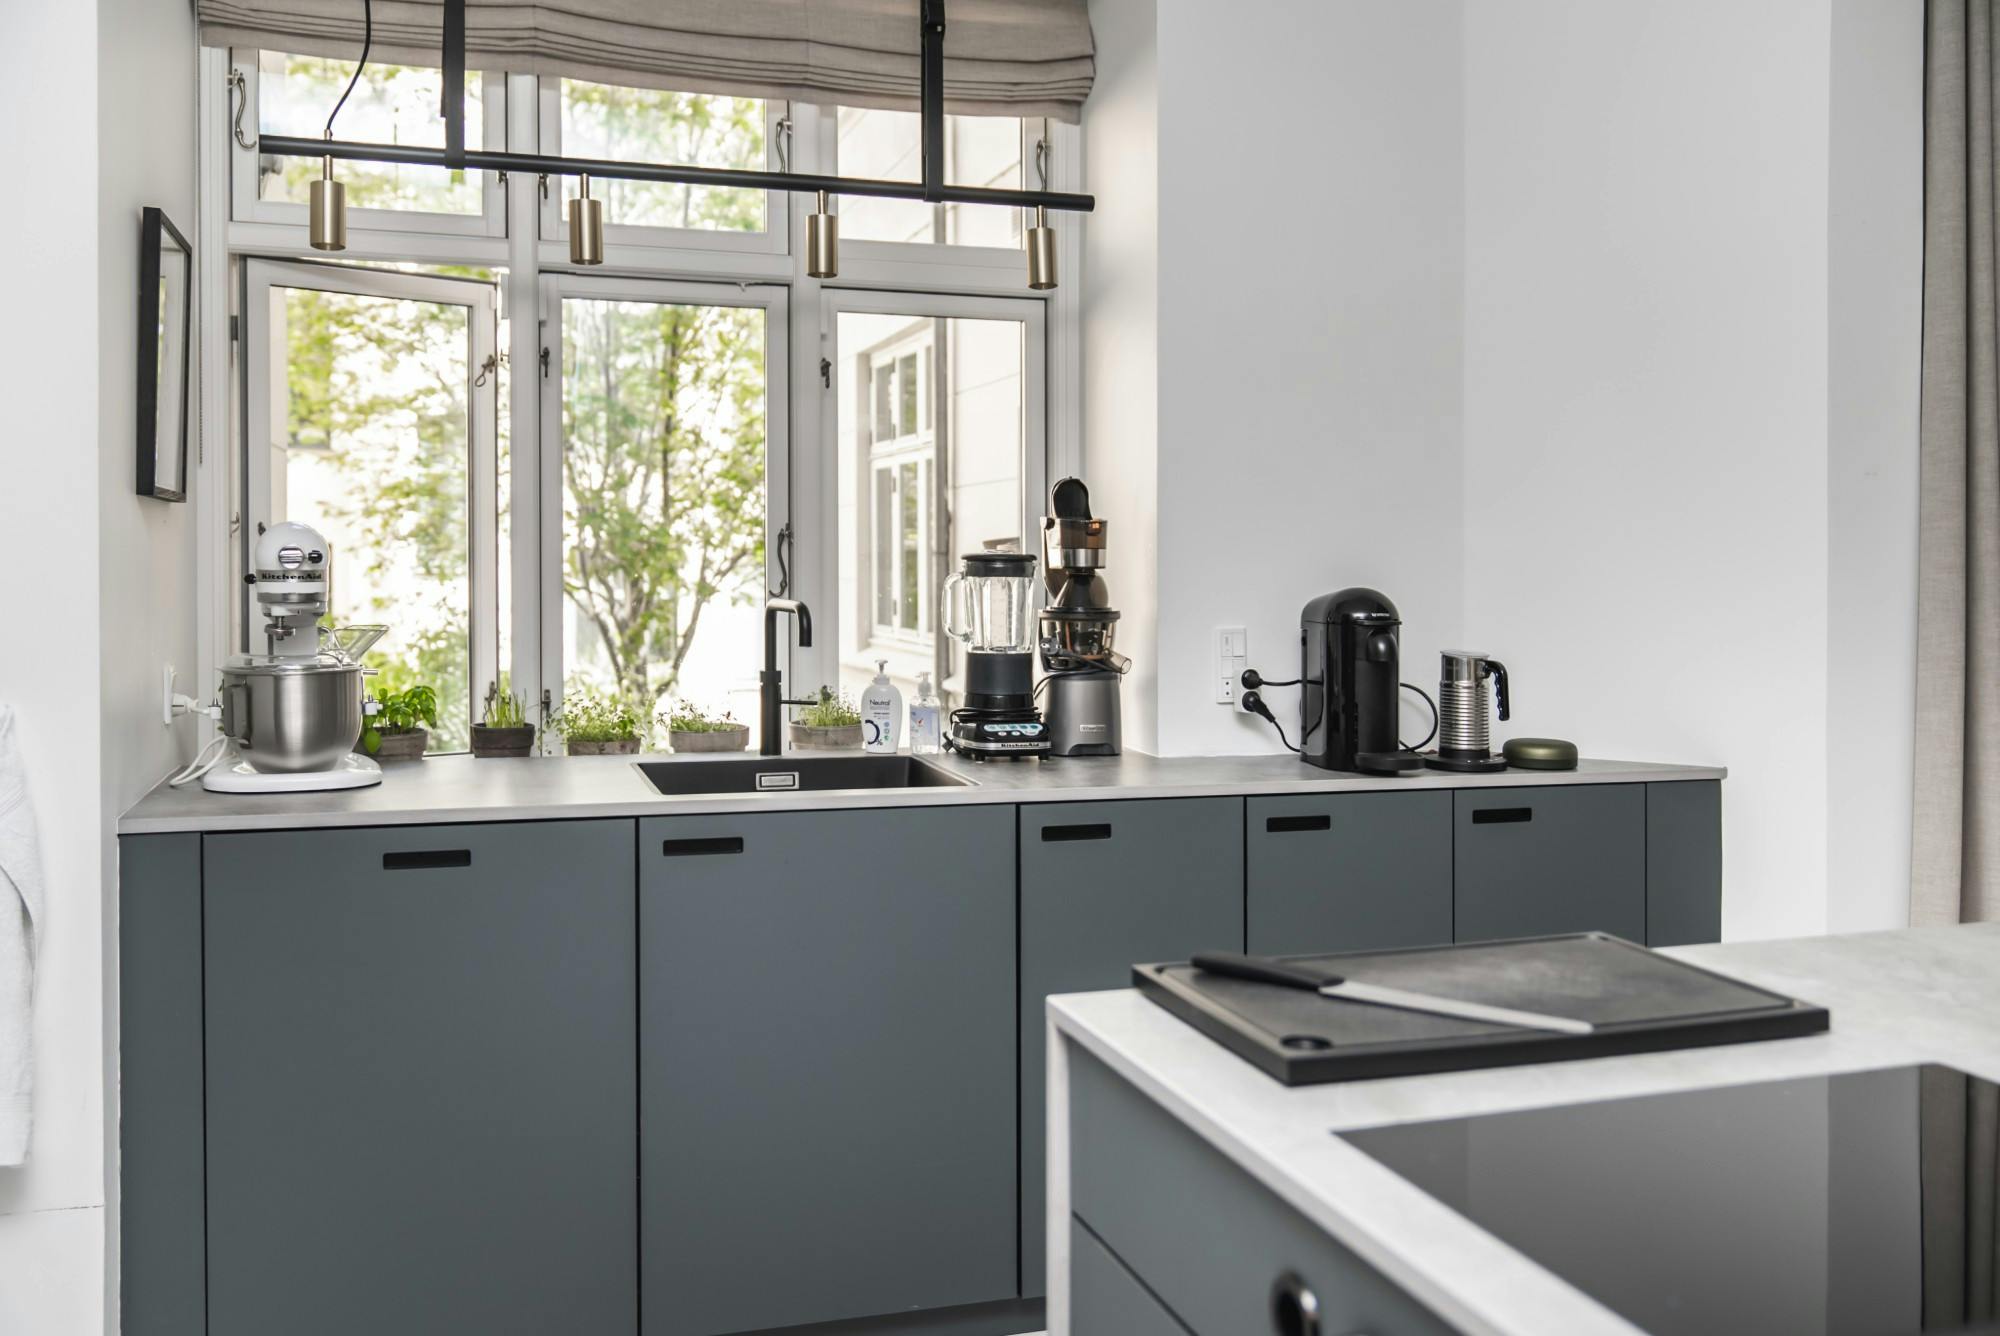 Bildnummer 38 des aktuellen Abschnitts von Professional features for a domestic kitchen worktop von Cosentino Österreich